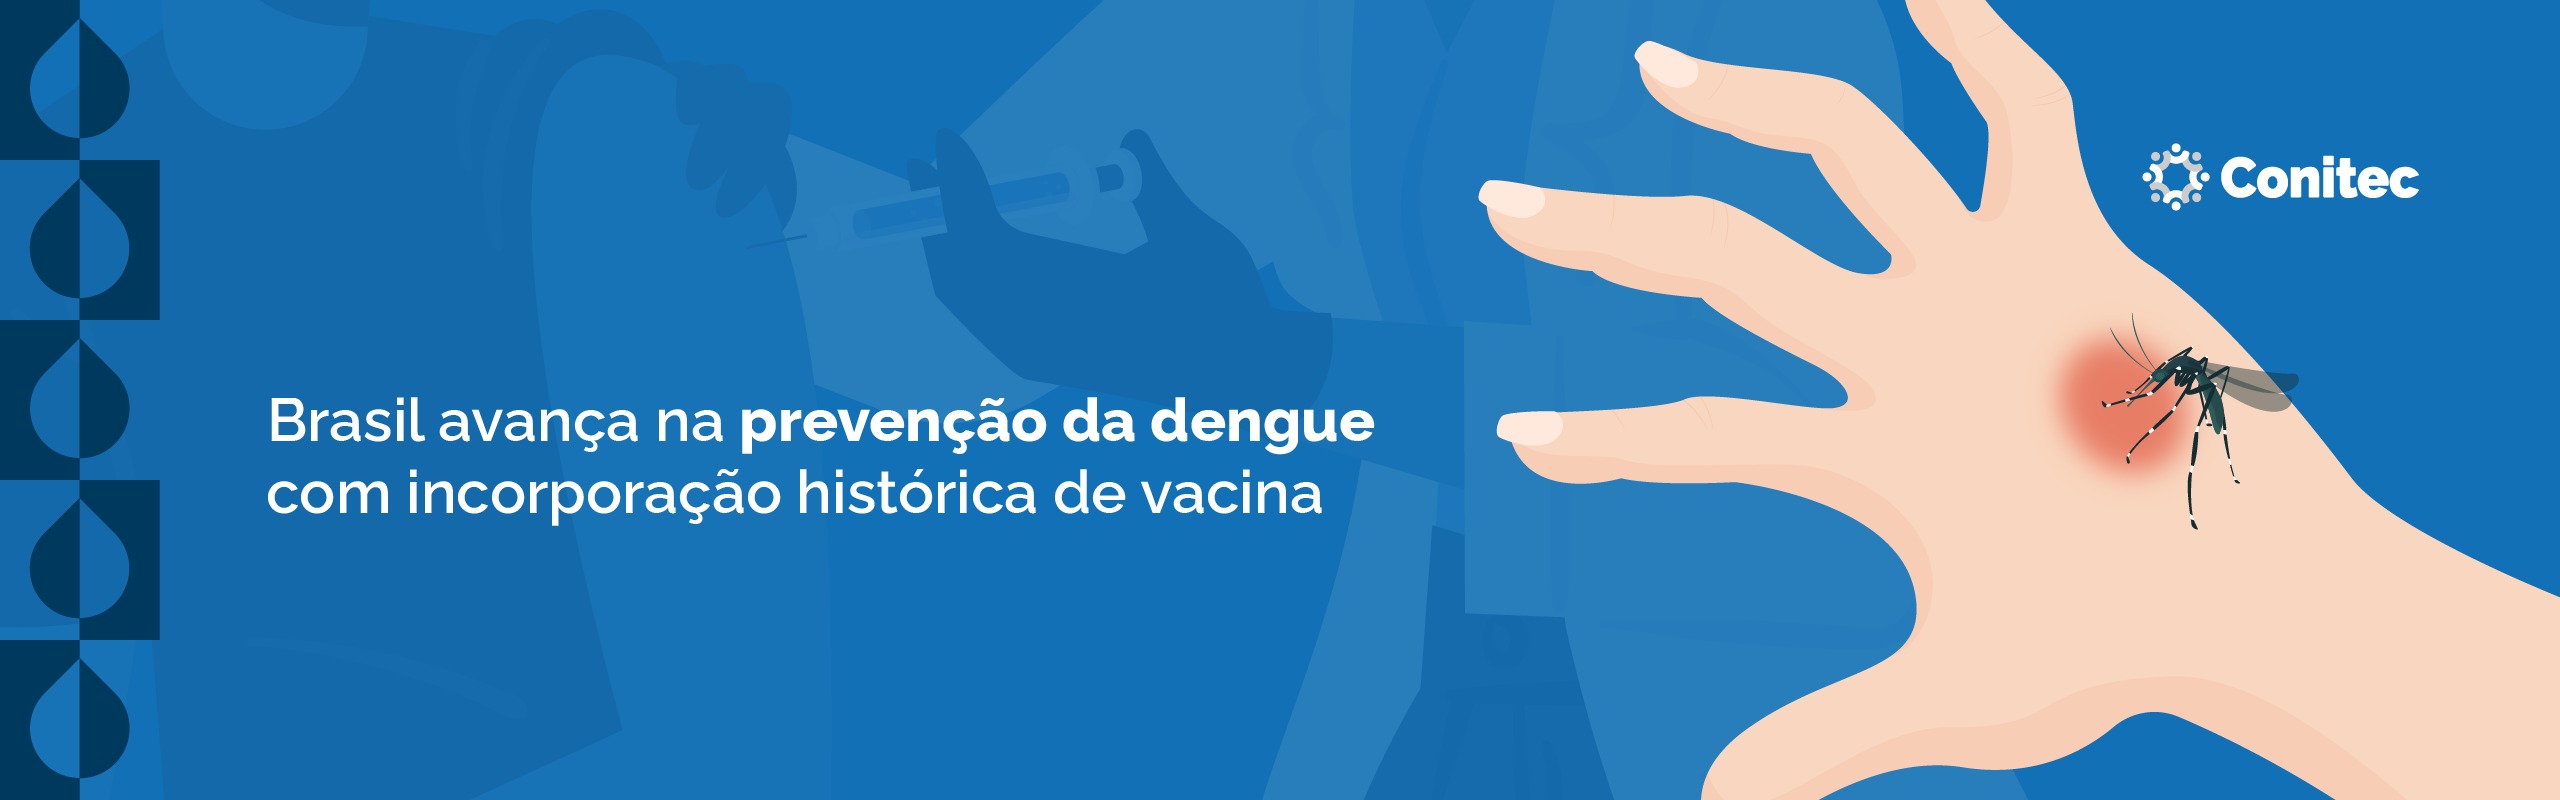 Brasil é o primeiro país a incorporar o imunizante no sistema público de saúde. PNI definirá como será a vacinação em públicos e regiões prioritárias diante da limitação de doses oferecidas pelo fabricante